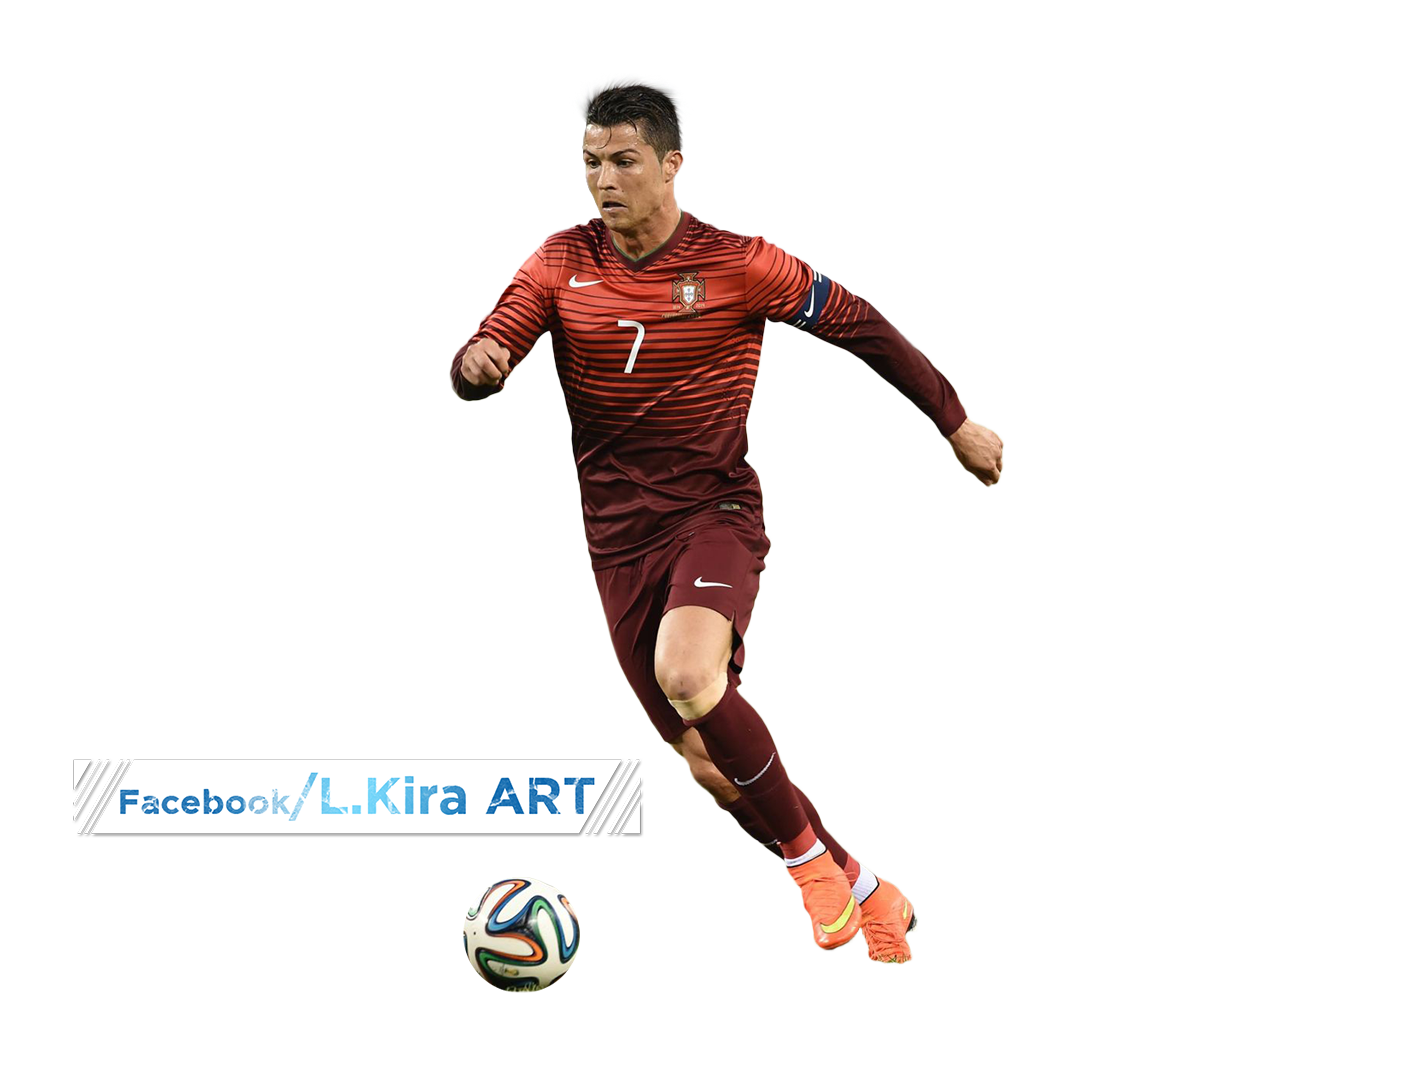 Cristiano Ronaldo by riikardo on DeviantArt